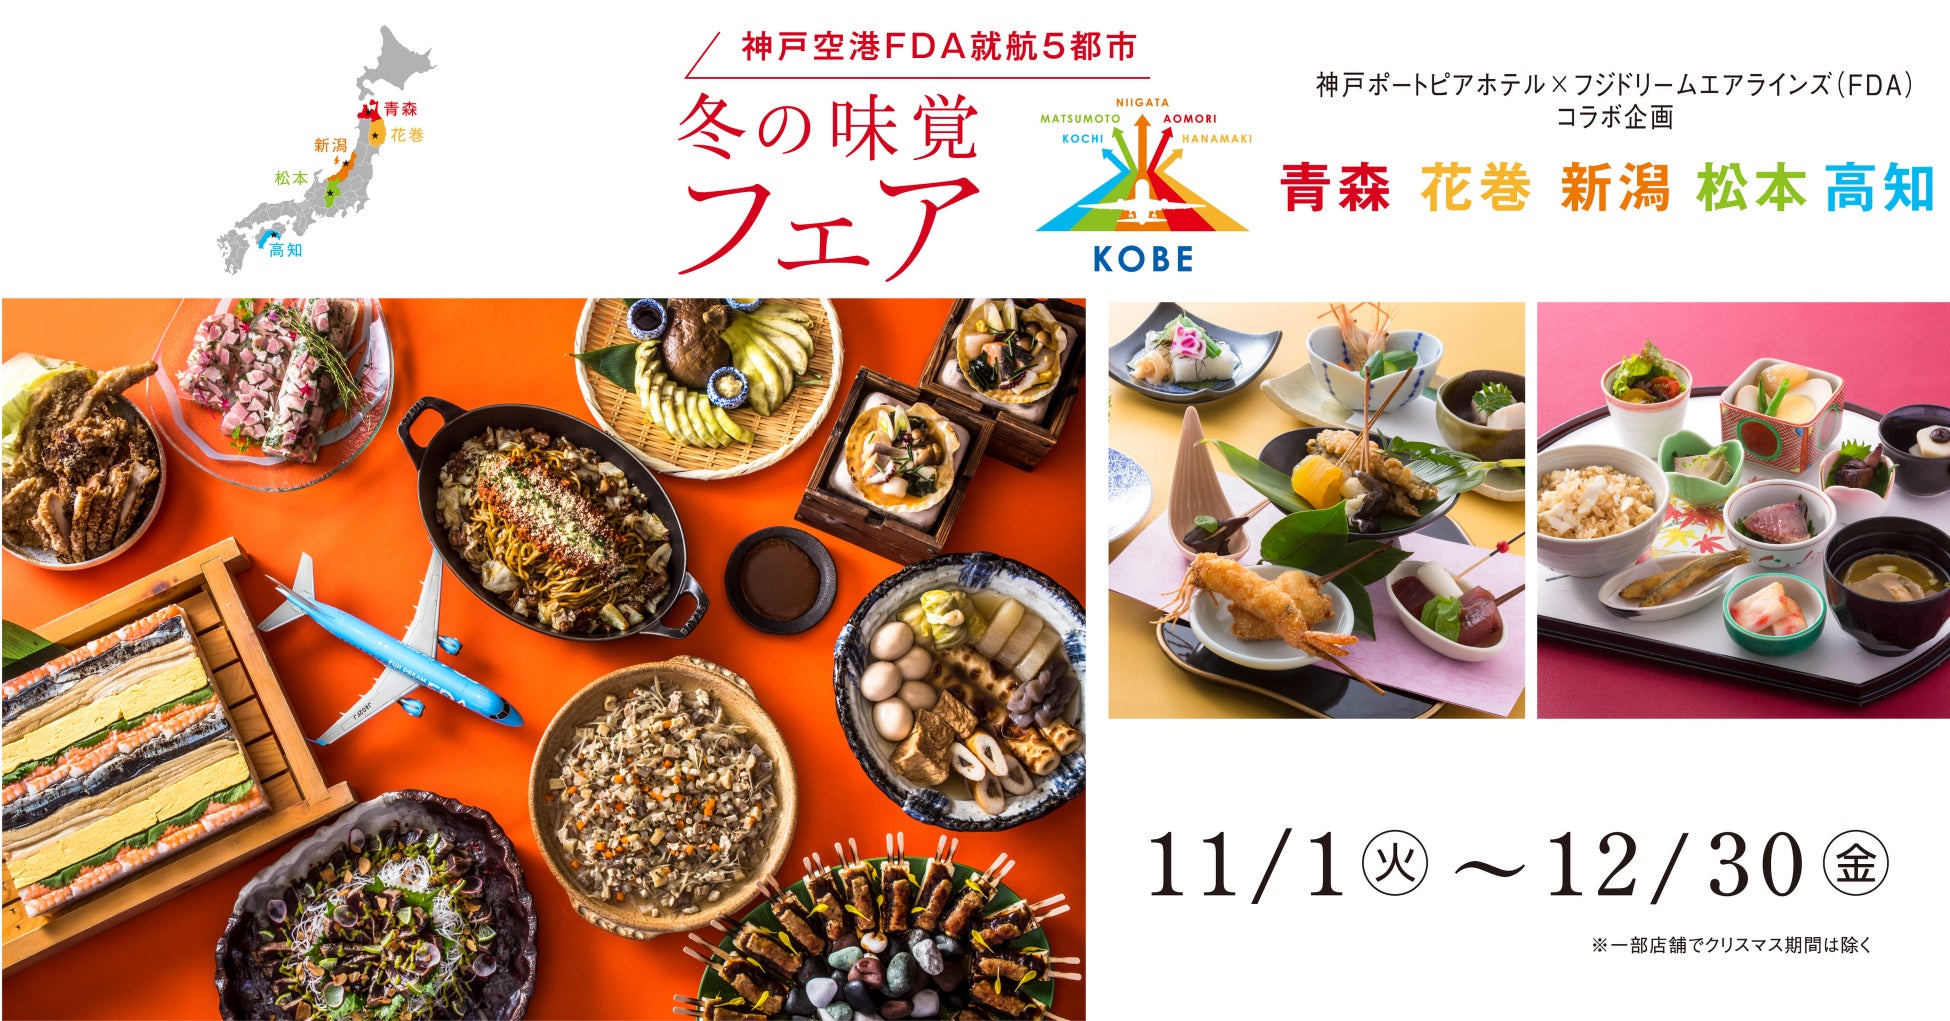 〈神戸ポートピアホテル〉×〈フジドリームエアラインズ〉 コラボ企画神戸空港FDA就航5都市の“うまかもん”が大集合！～冬の味覚フェア～ 開催